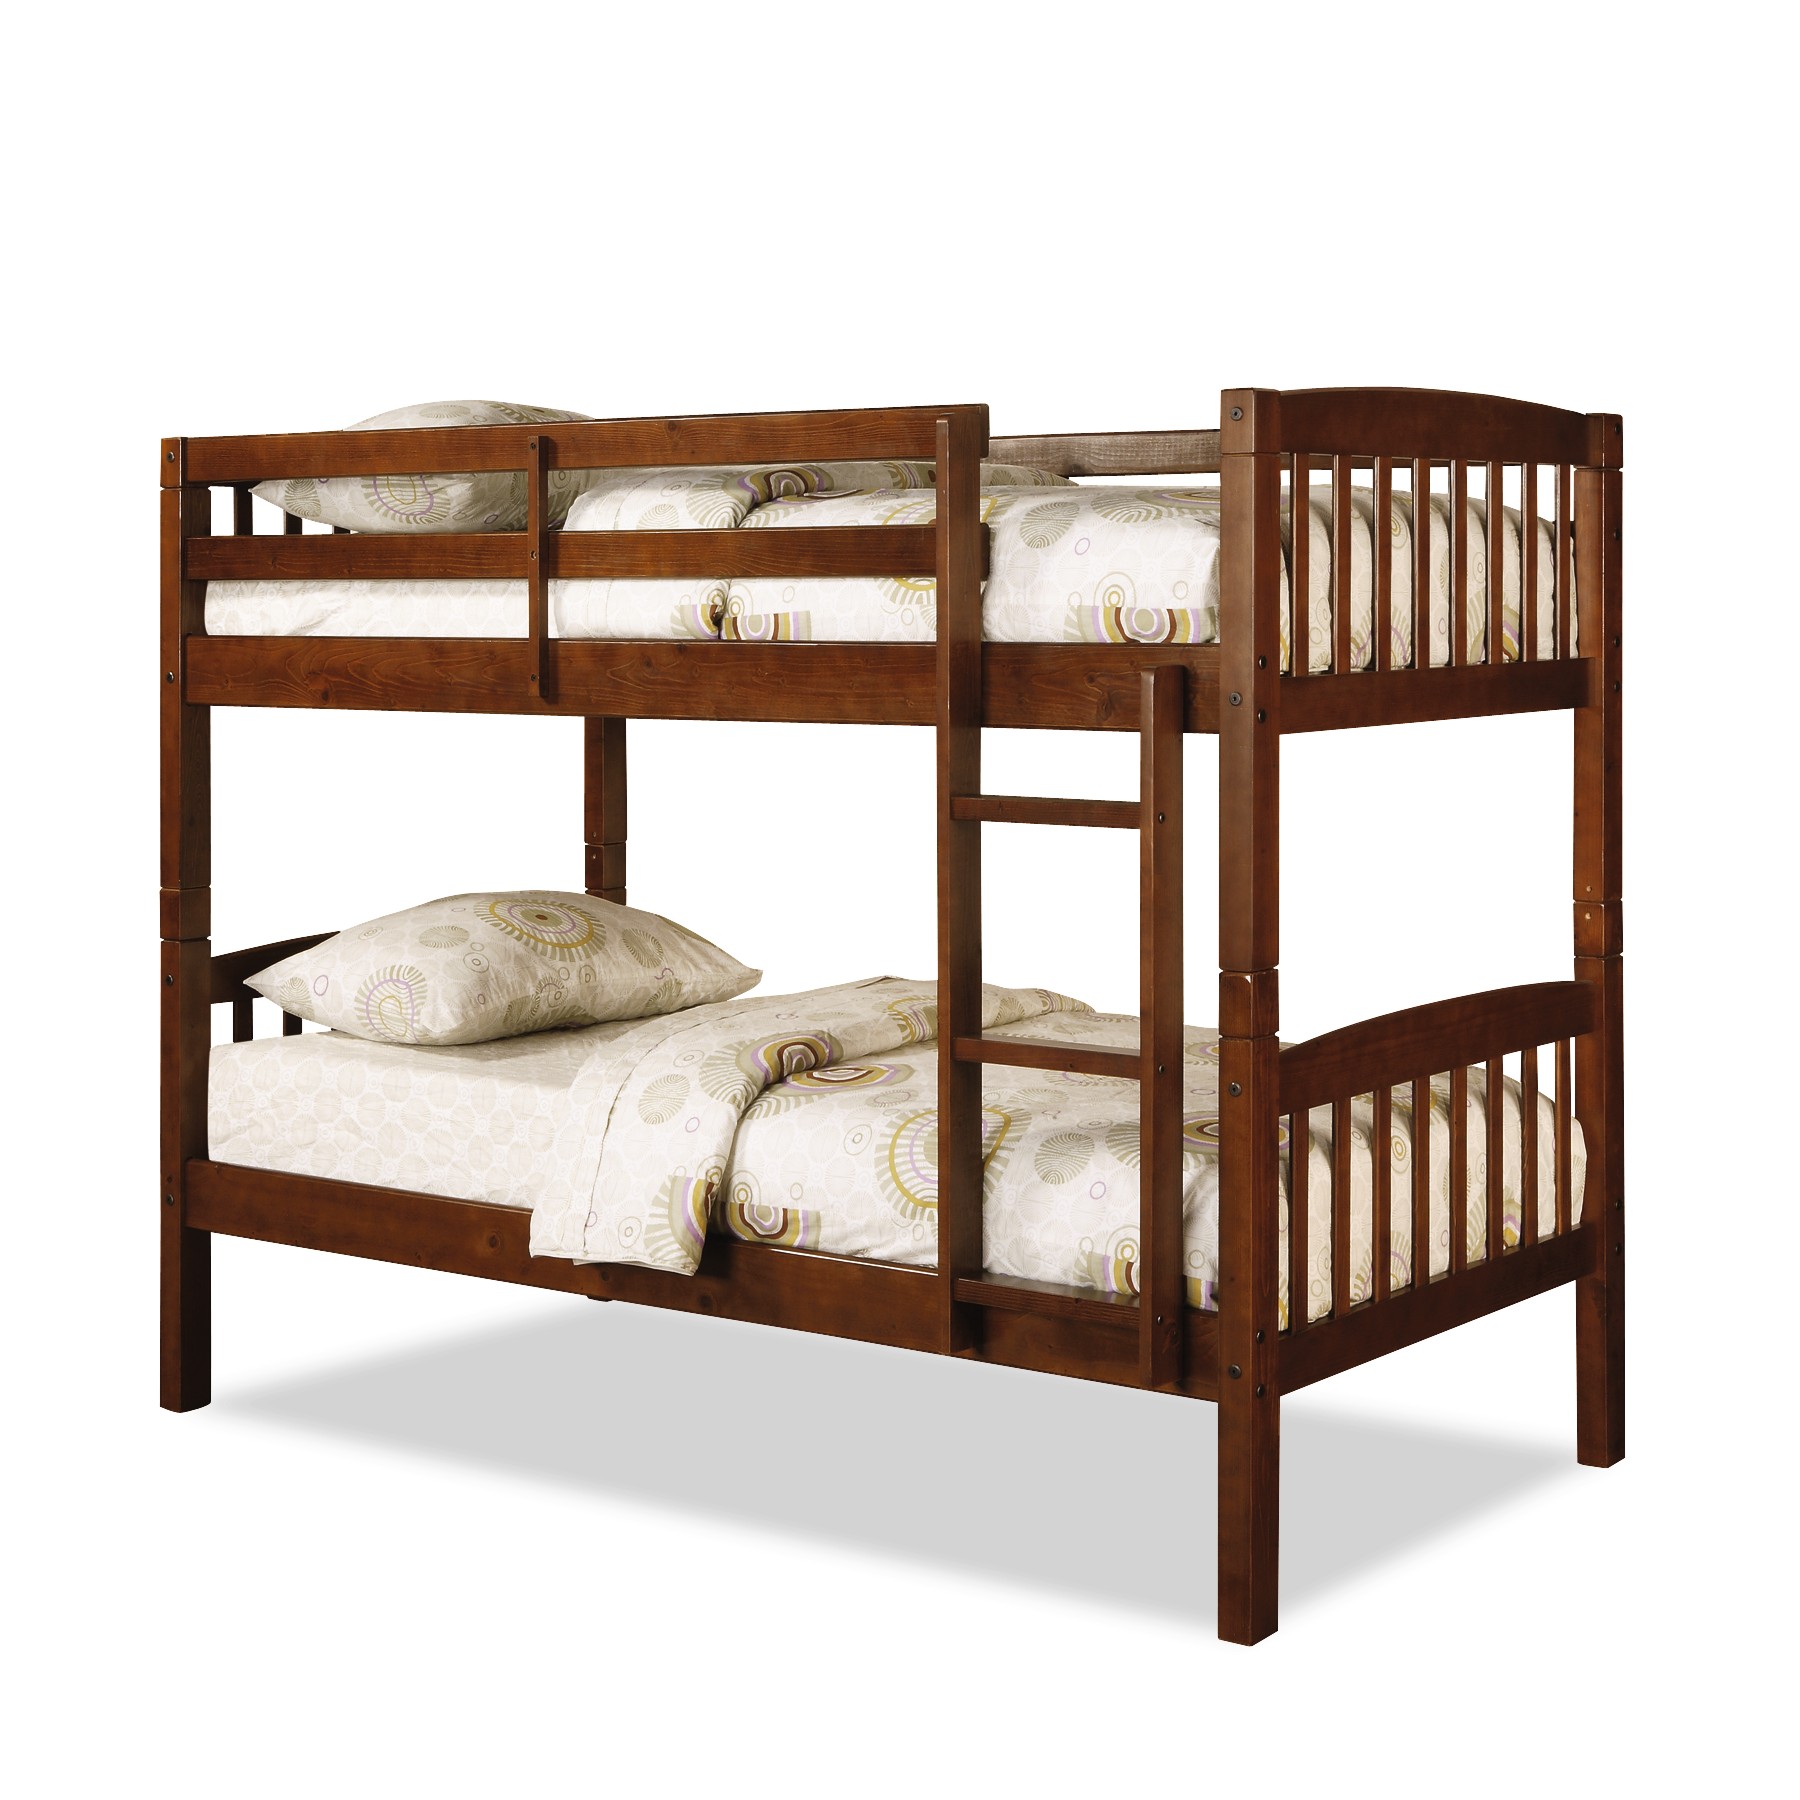 Dorel Belmont Twin Bunk Bed Walnut, Kmart Metal Bunk Beds